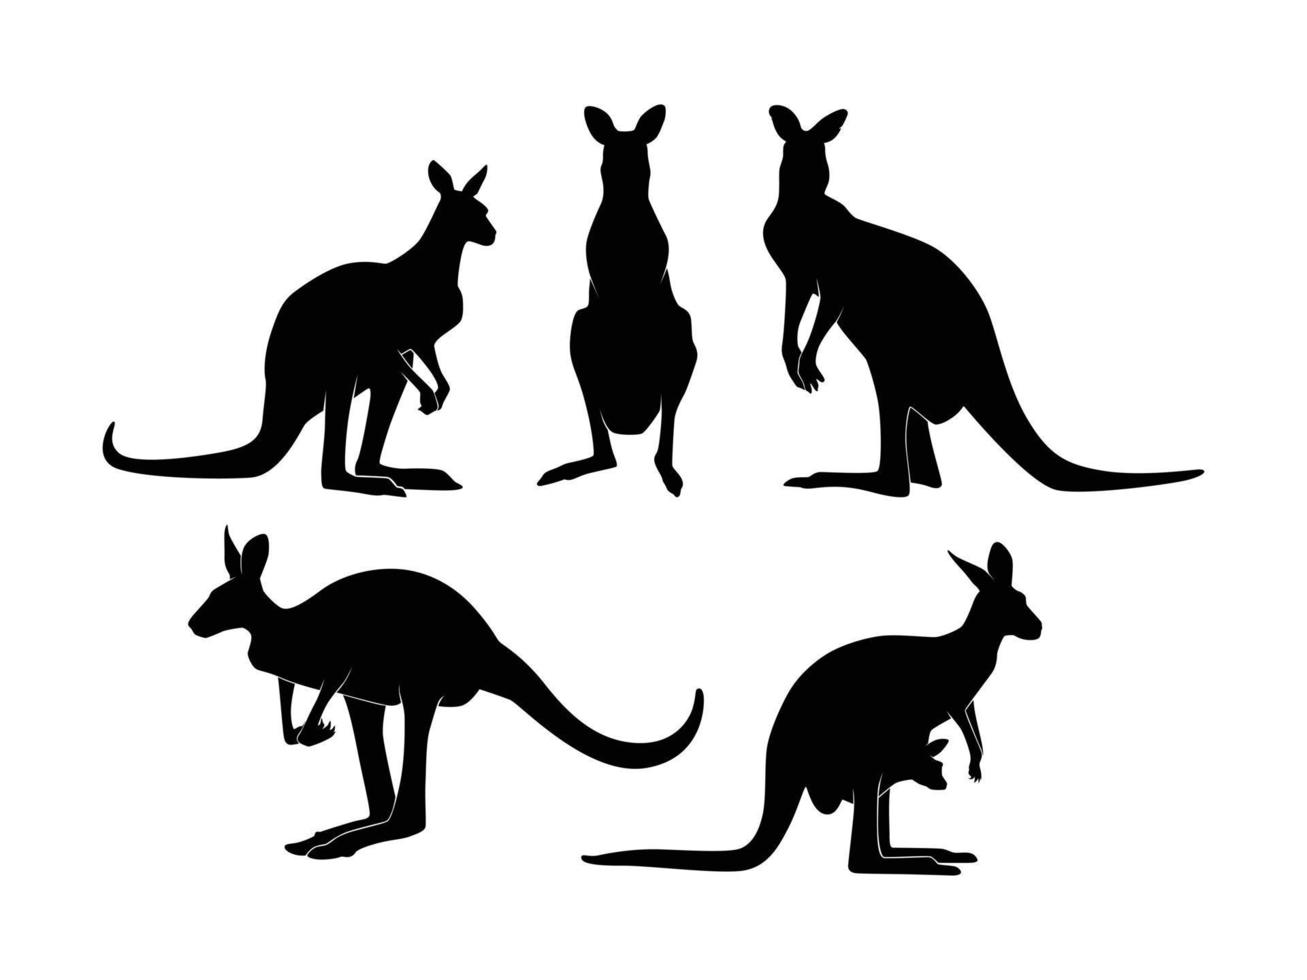 ensemble de silhouette de kangourous isolé sur fond blanc - illustration vectorielle vecteur